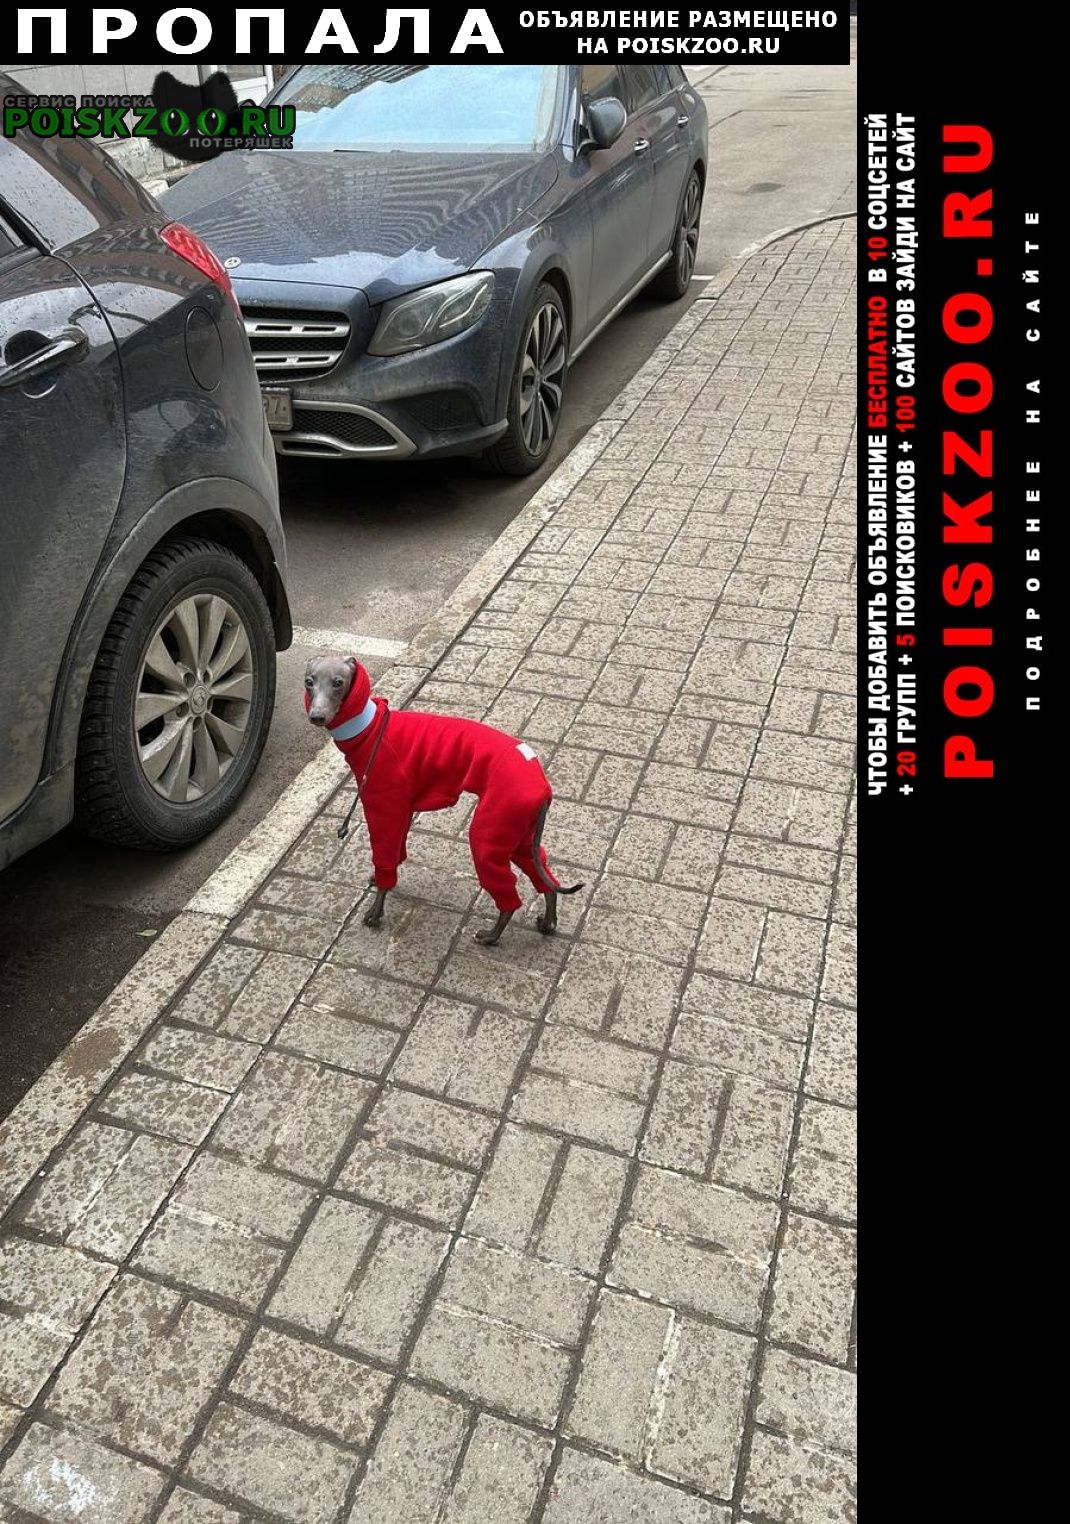 Пропала собака кобель может быть в любом районе. не ловить Москва